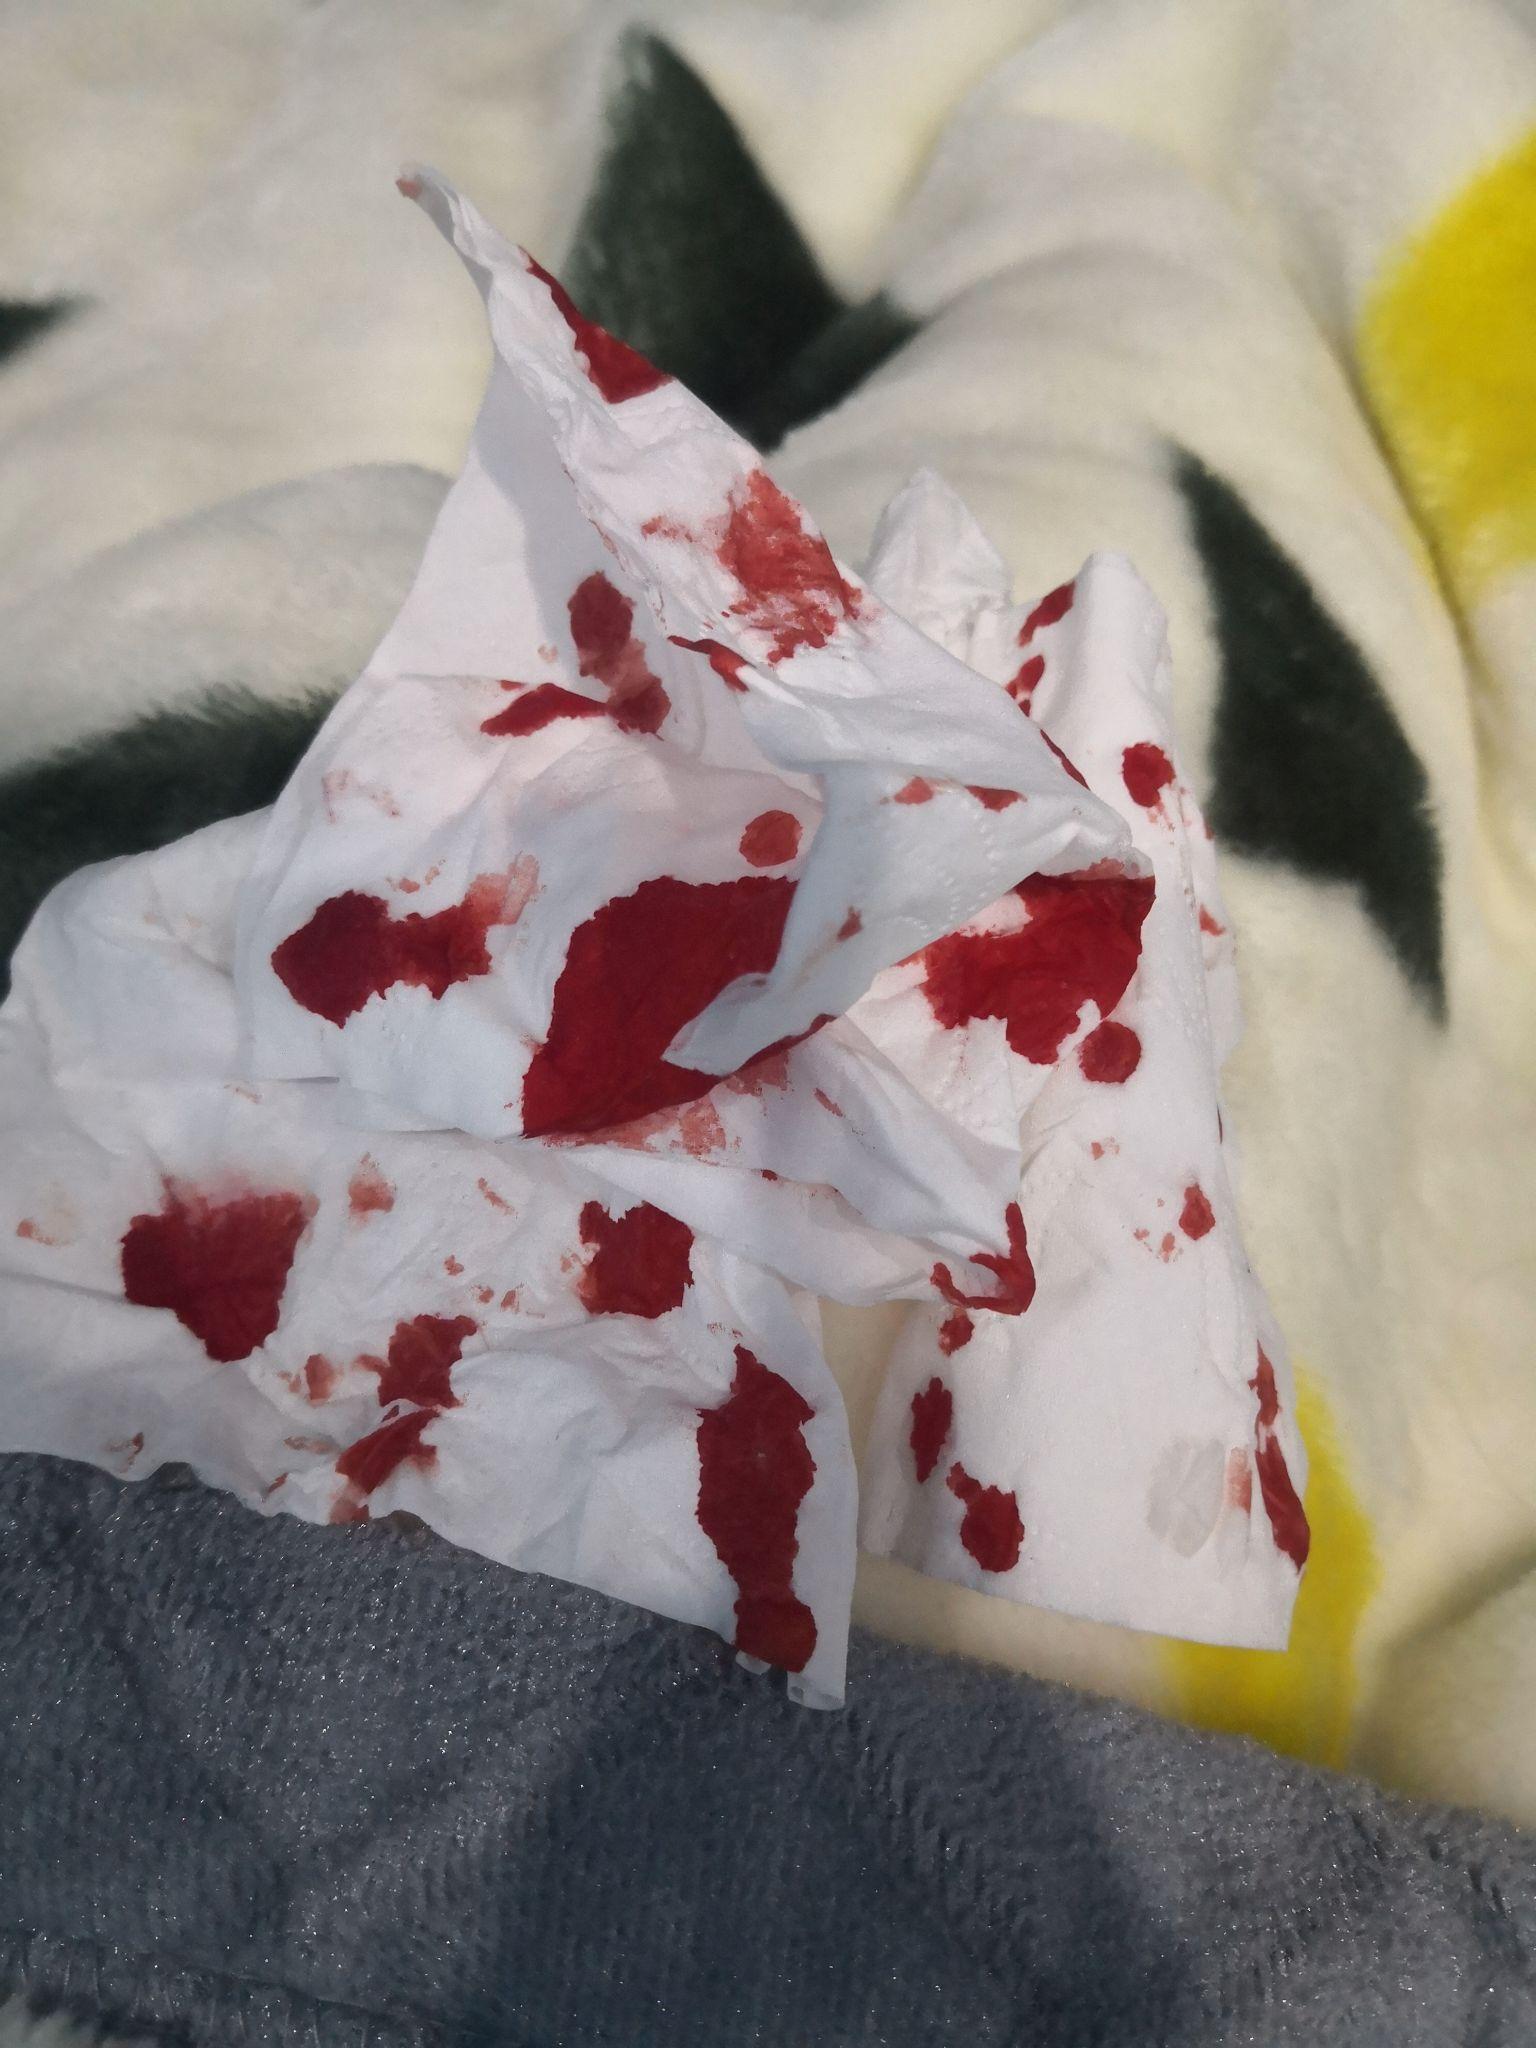 纸巾上面有鼻血的照片图片